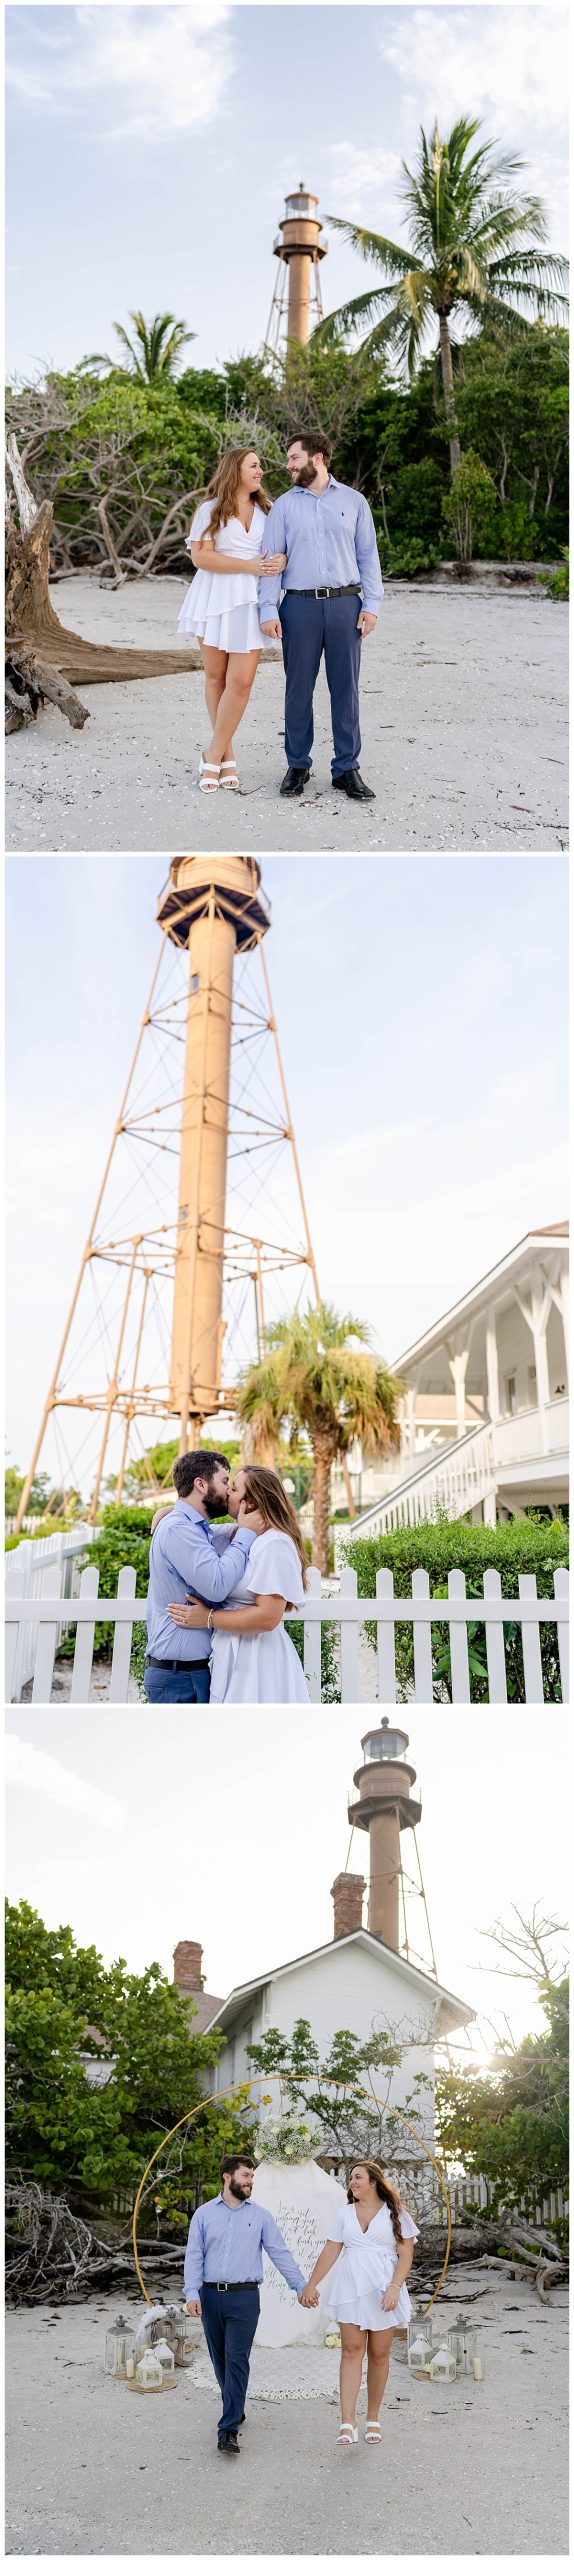 Sanibel Lighthouse engagement photoshoot